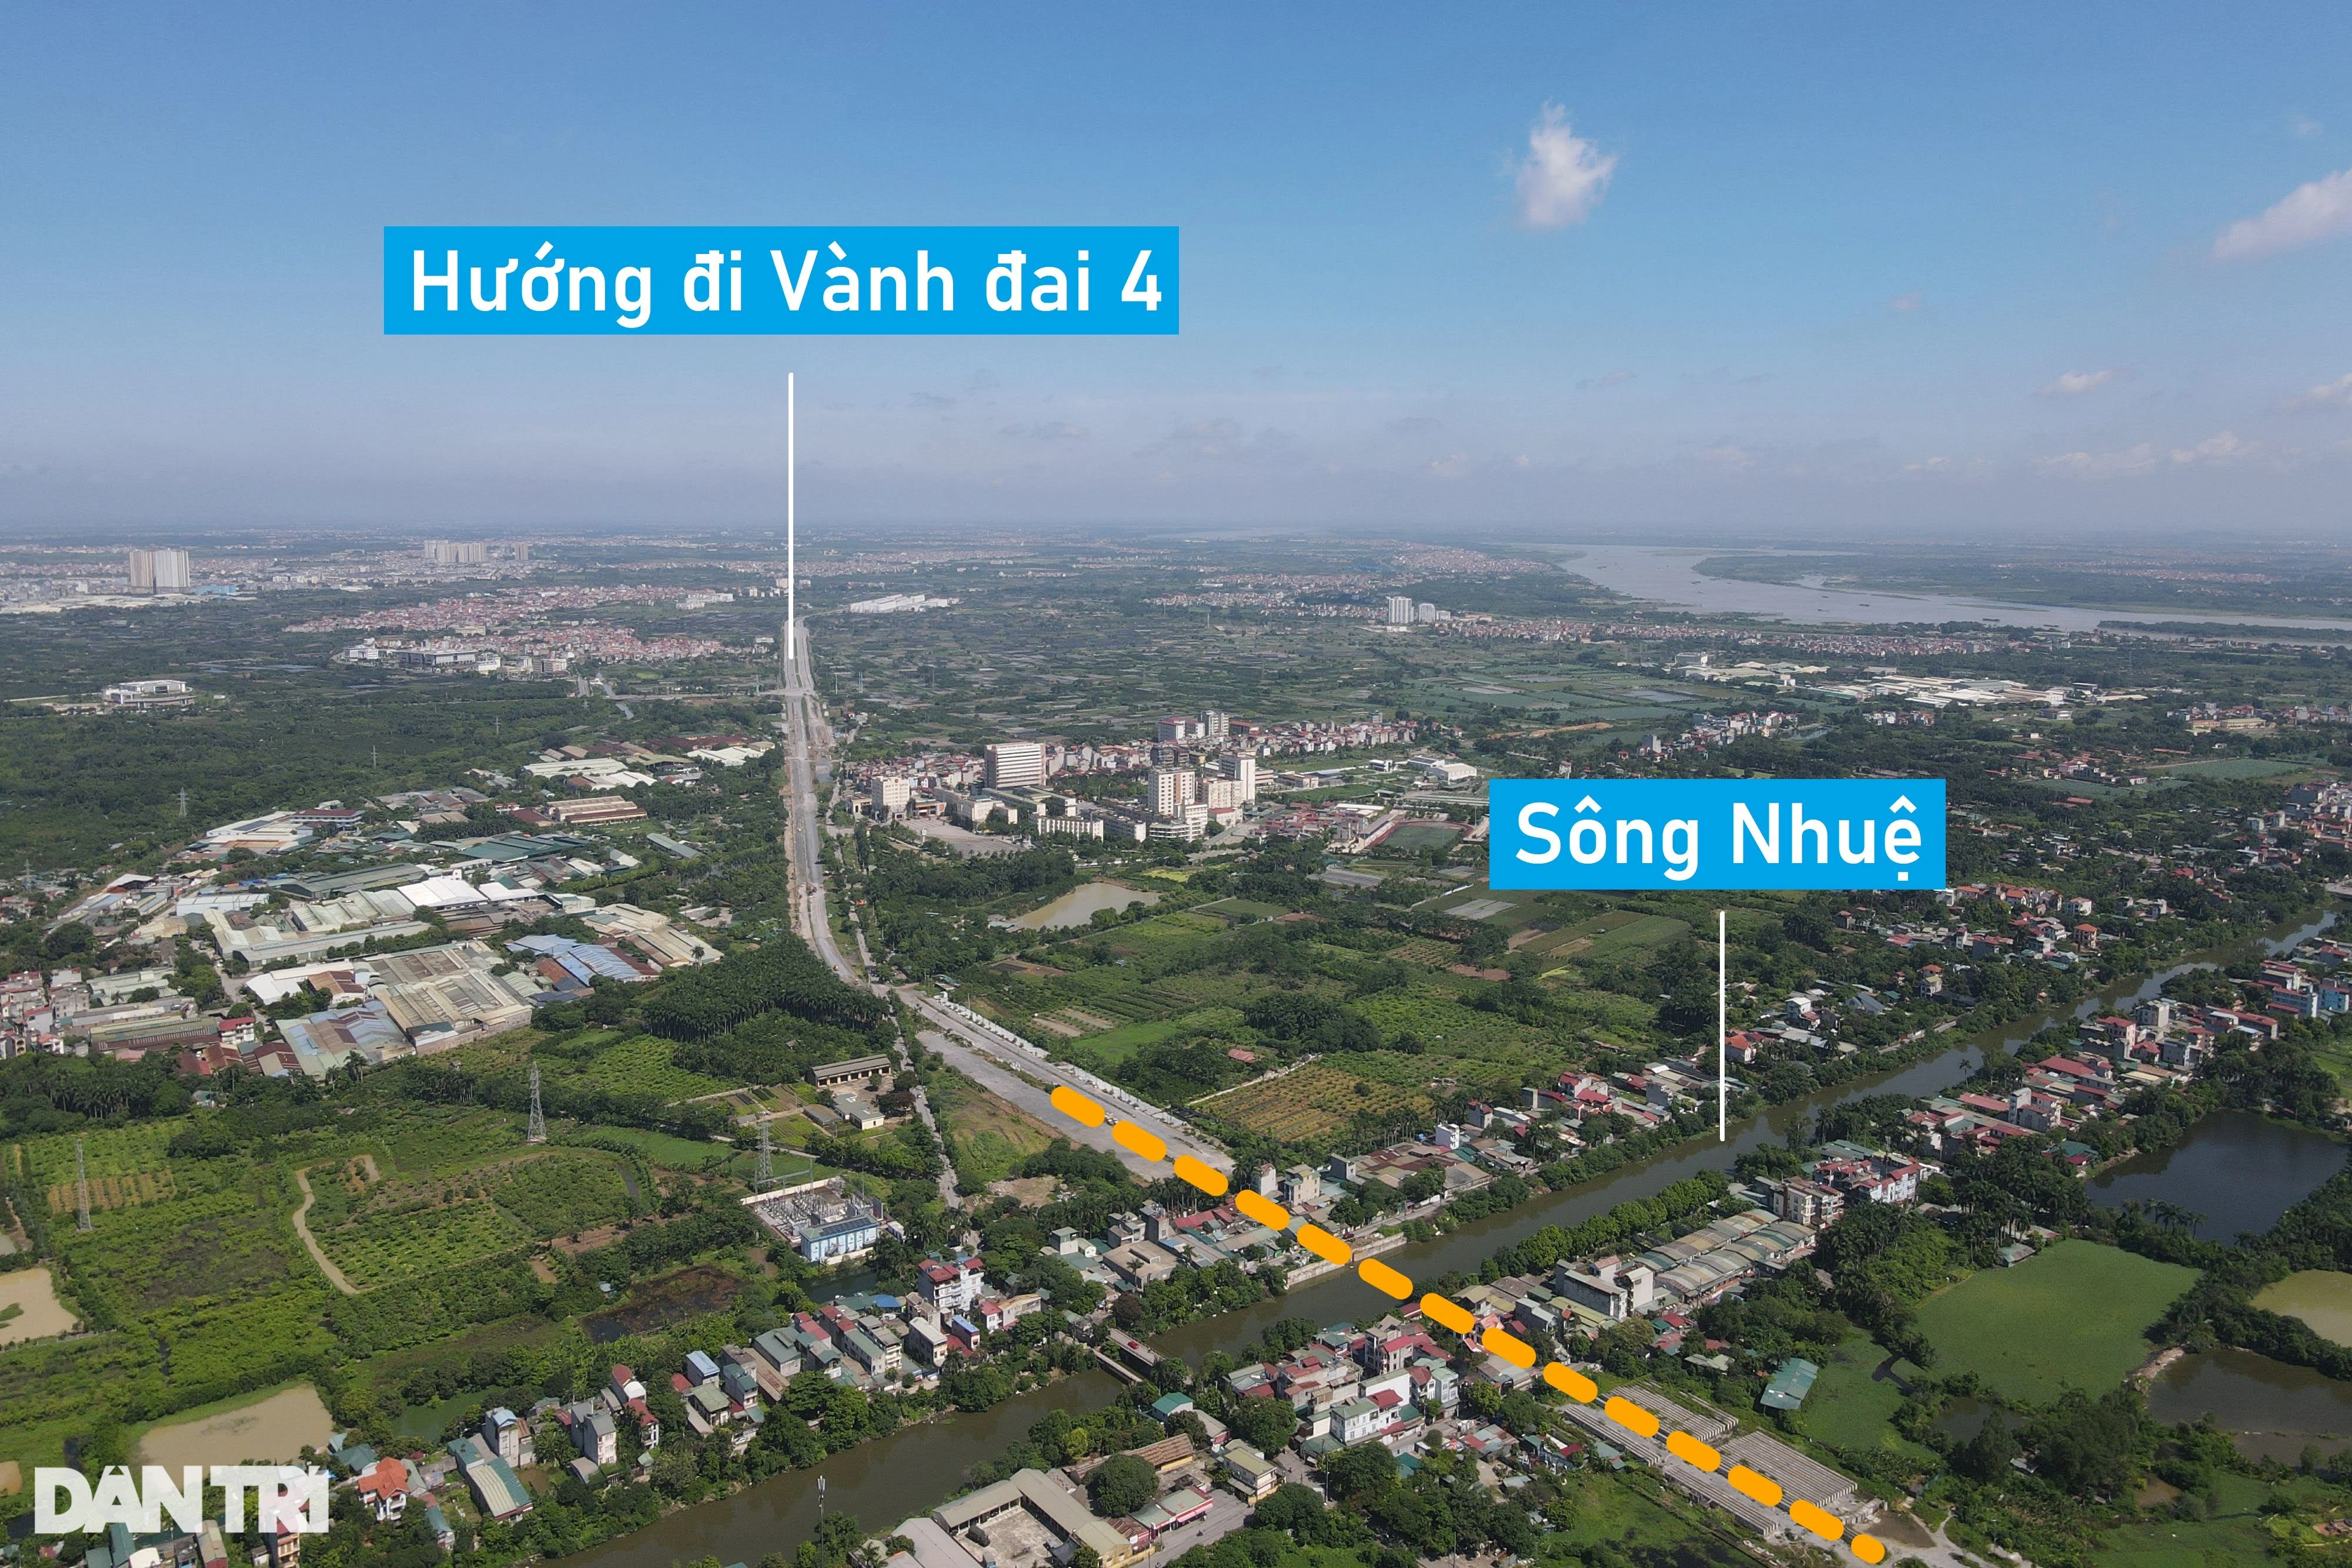 View - Loạt đường kết nối siêu dự án Tây Hồ Tây của Hà Nội | Báo Dân trí